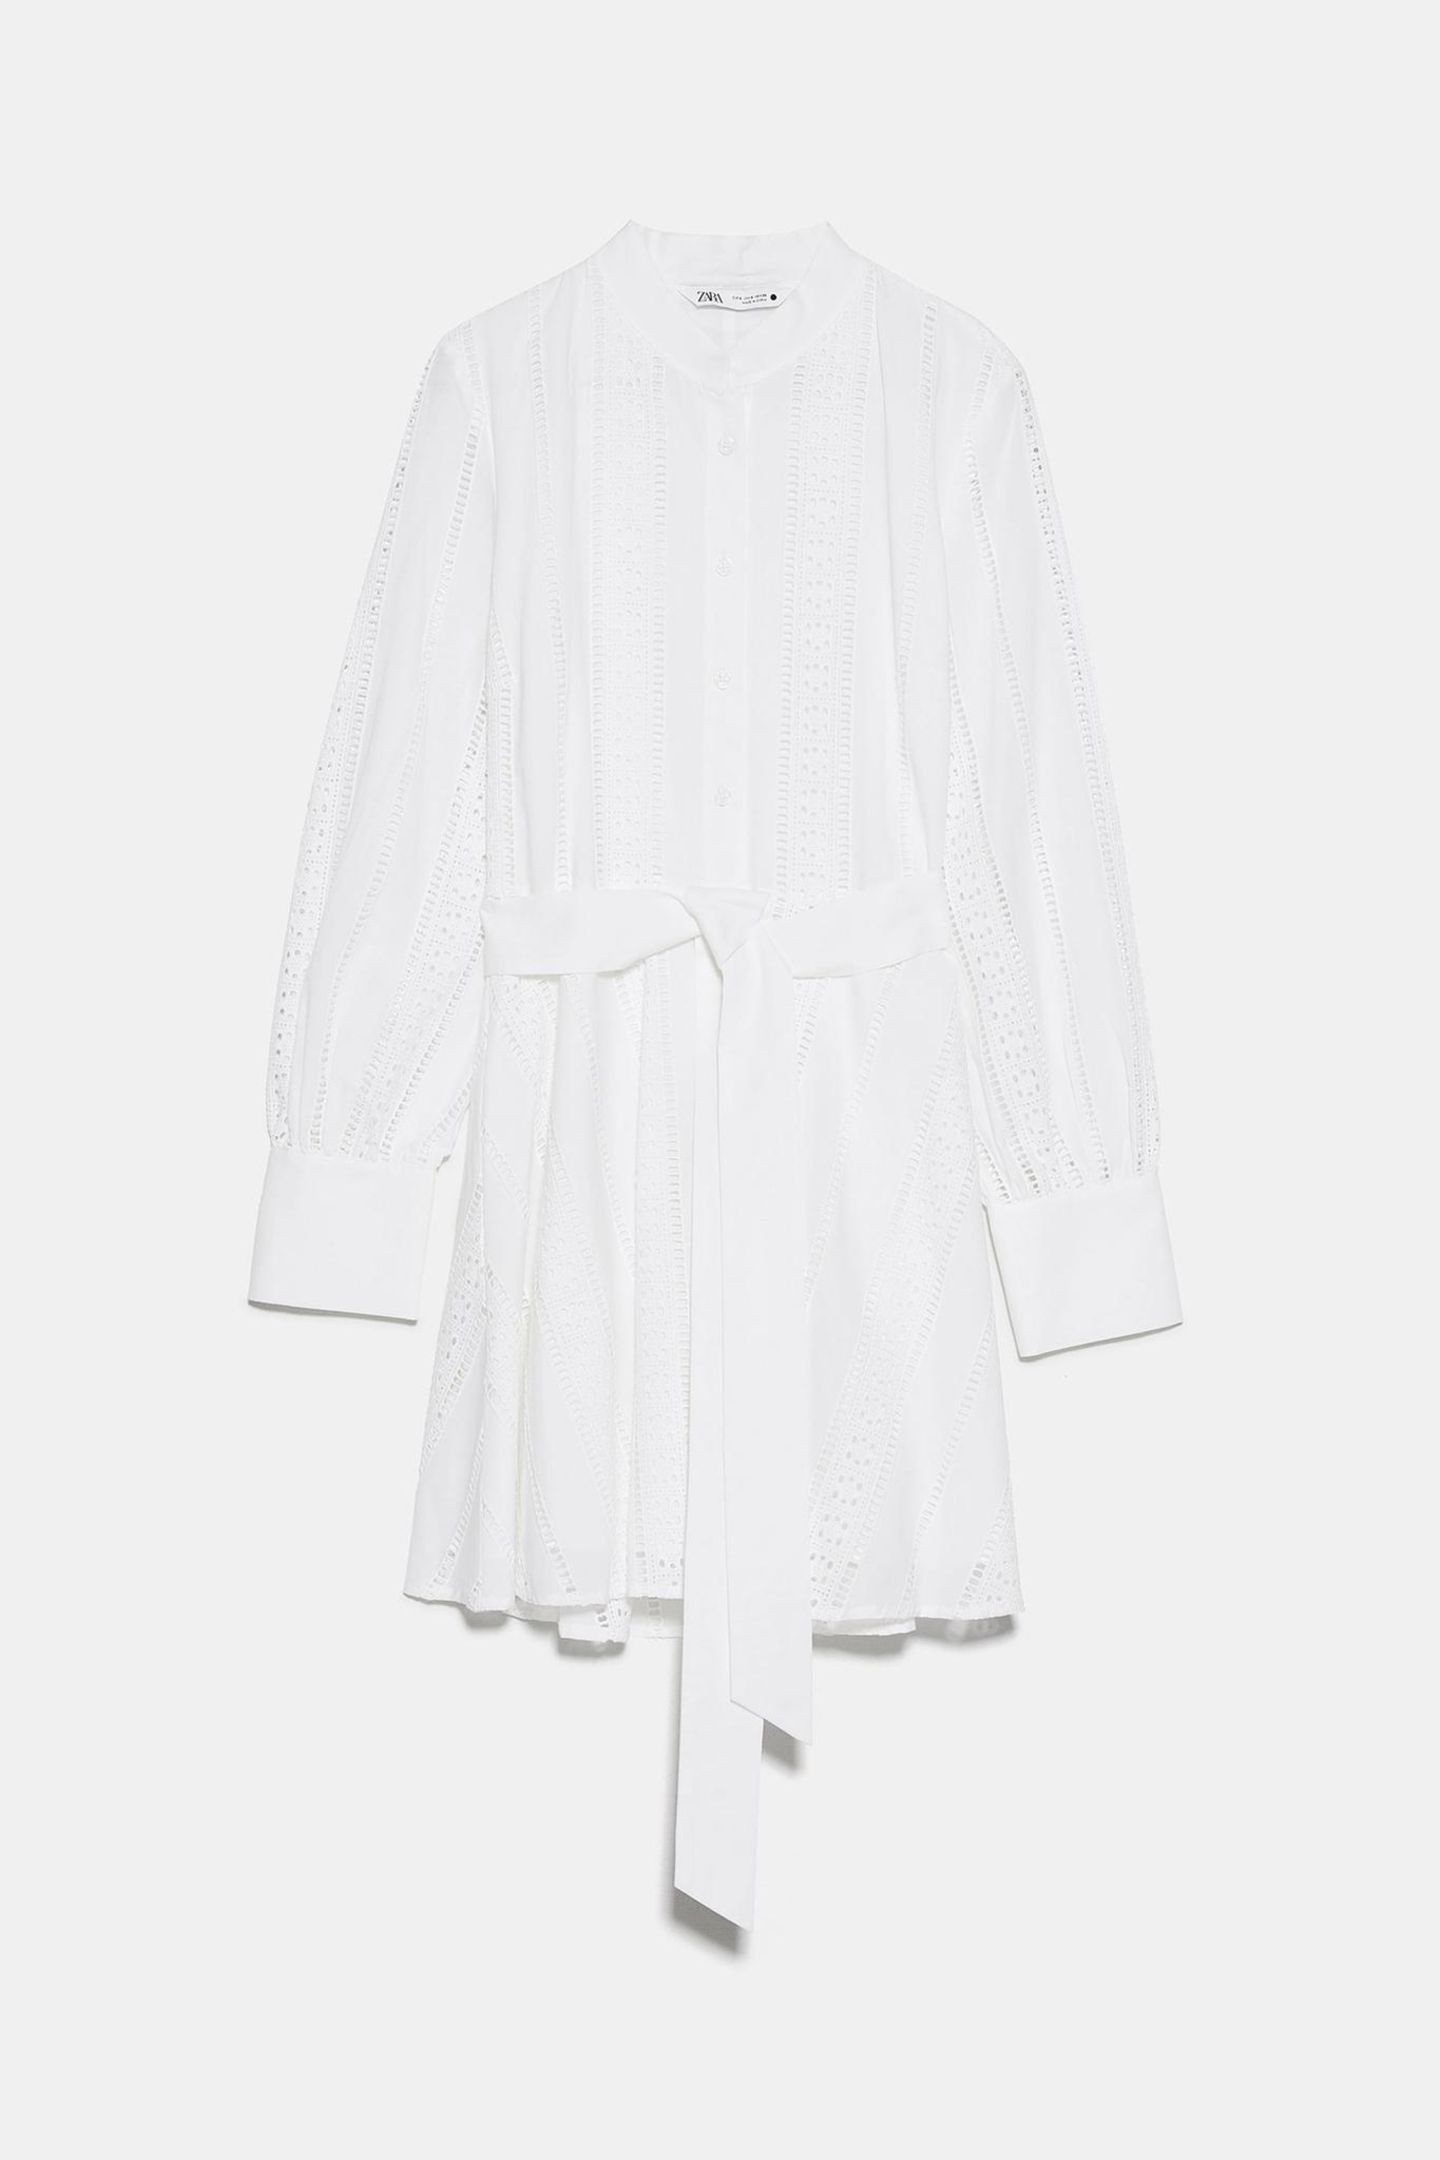 Weiße Kleider gehören zu den absoluten Must-haves im Frühjahr/Sommer. Dieses Traumteil kommt mit langen Armen, coolem Bindegürtel und toller Lochspitze daher. Von Zara, um 50 Euro.